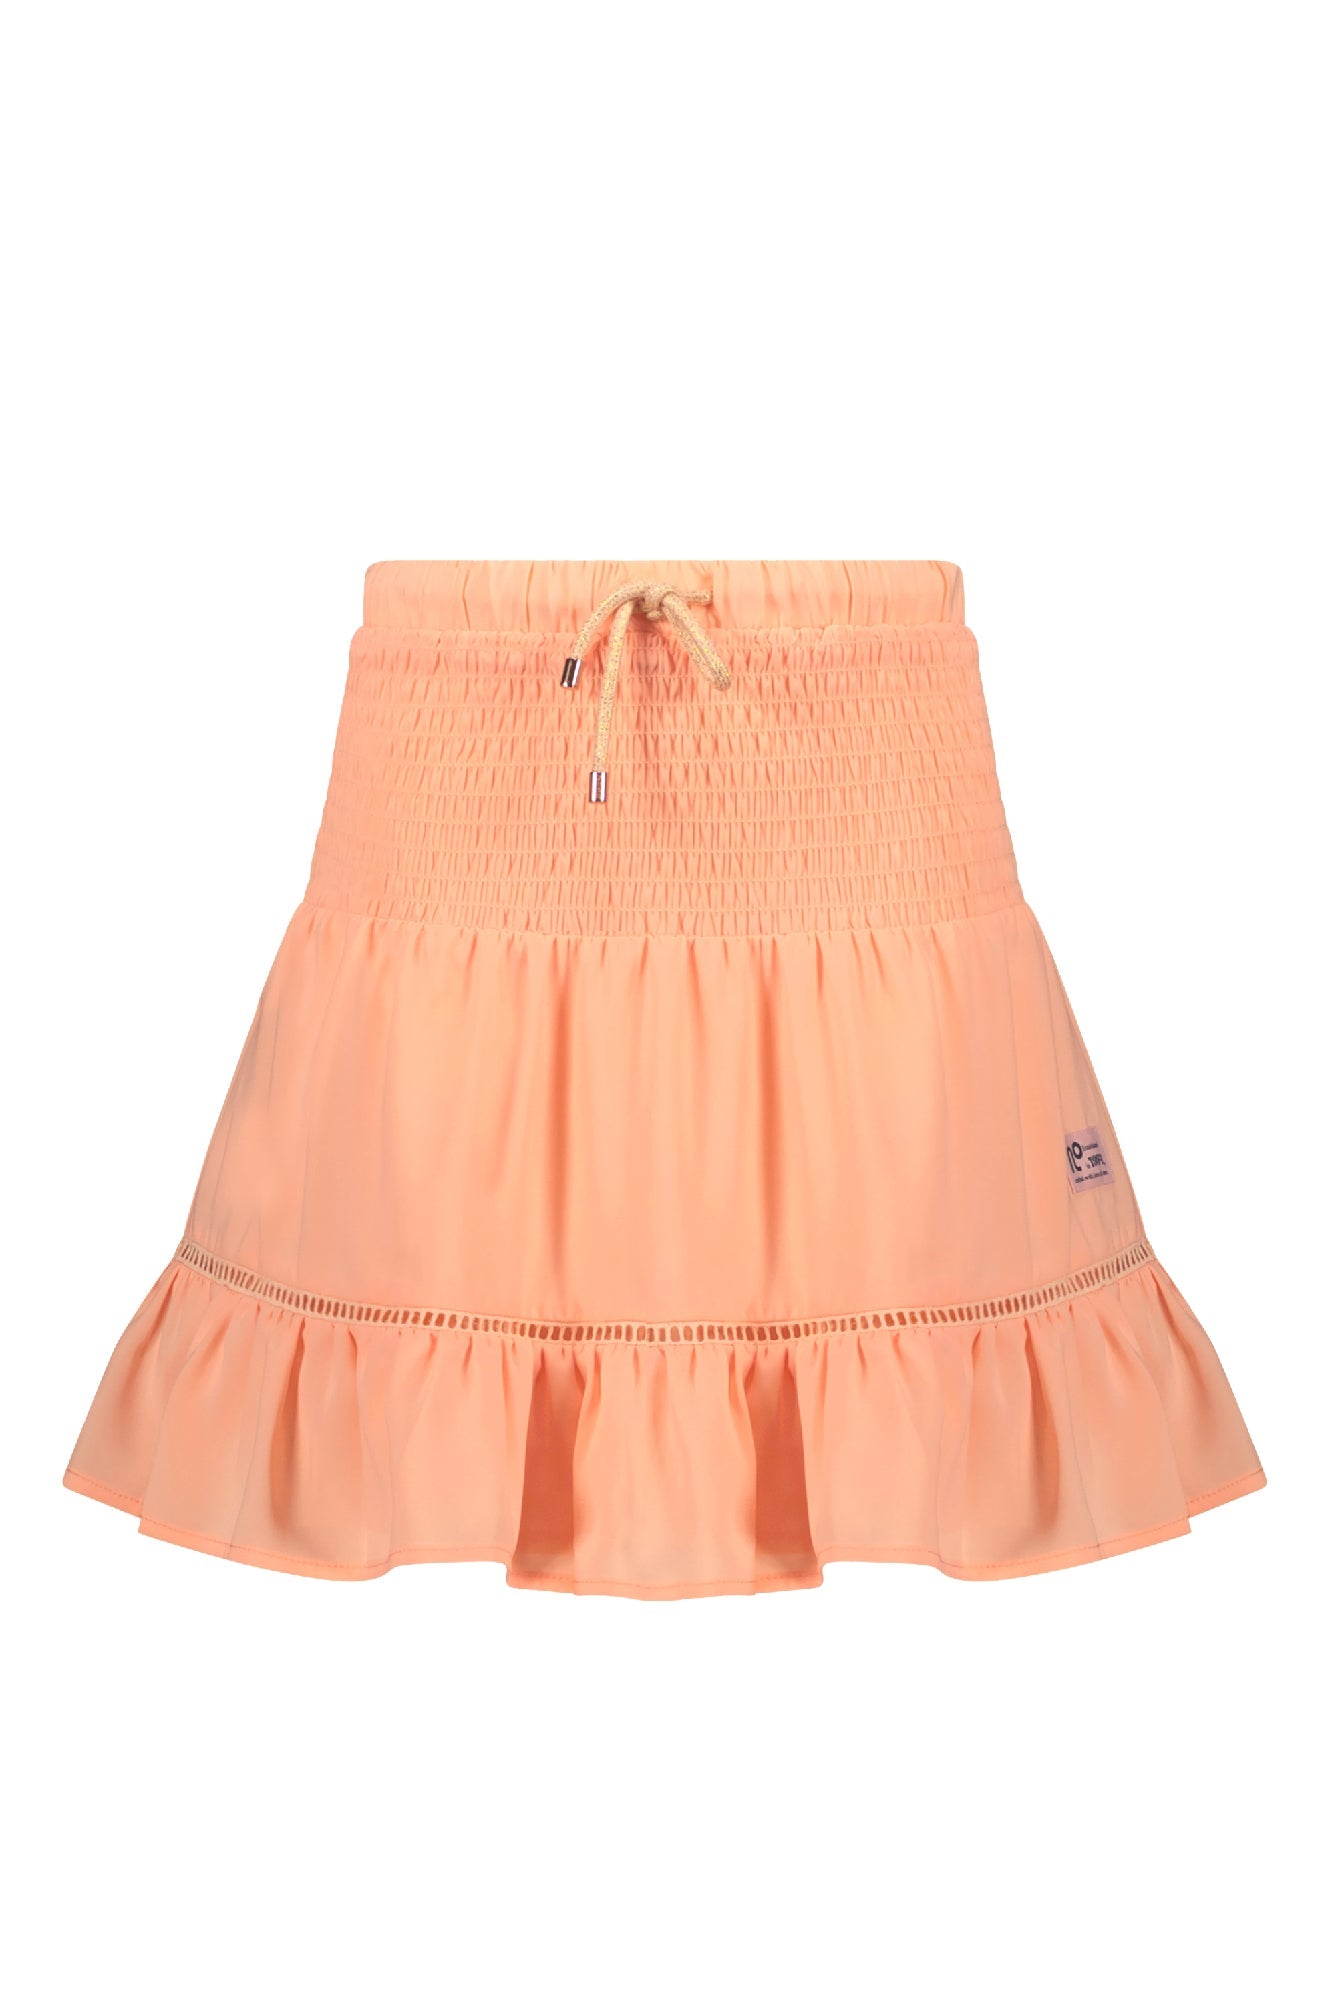 Meisjes Noor solid short skirt with smocked waistband van NoNo in de kleur Melon in maat 134-140.